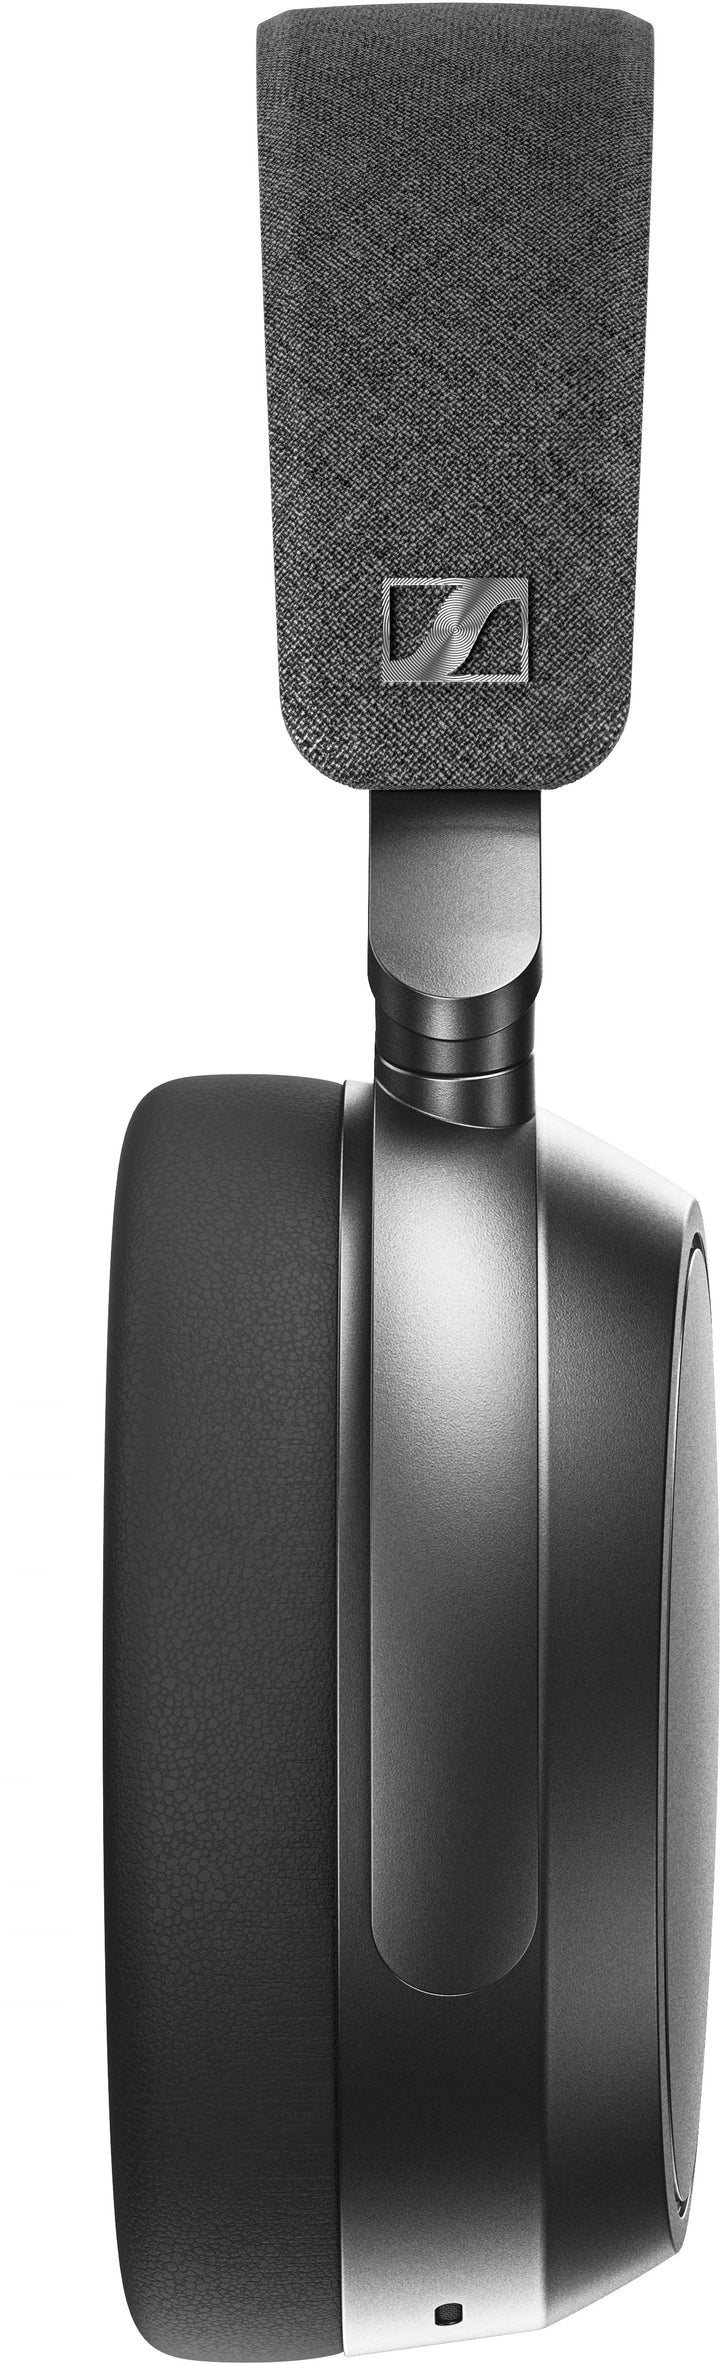 Sennheiser - Momentum 4 Wireless Adaptive Noise-Canceling Over-The-Ear Headphones - Graphite_9